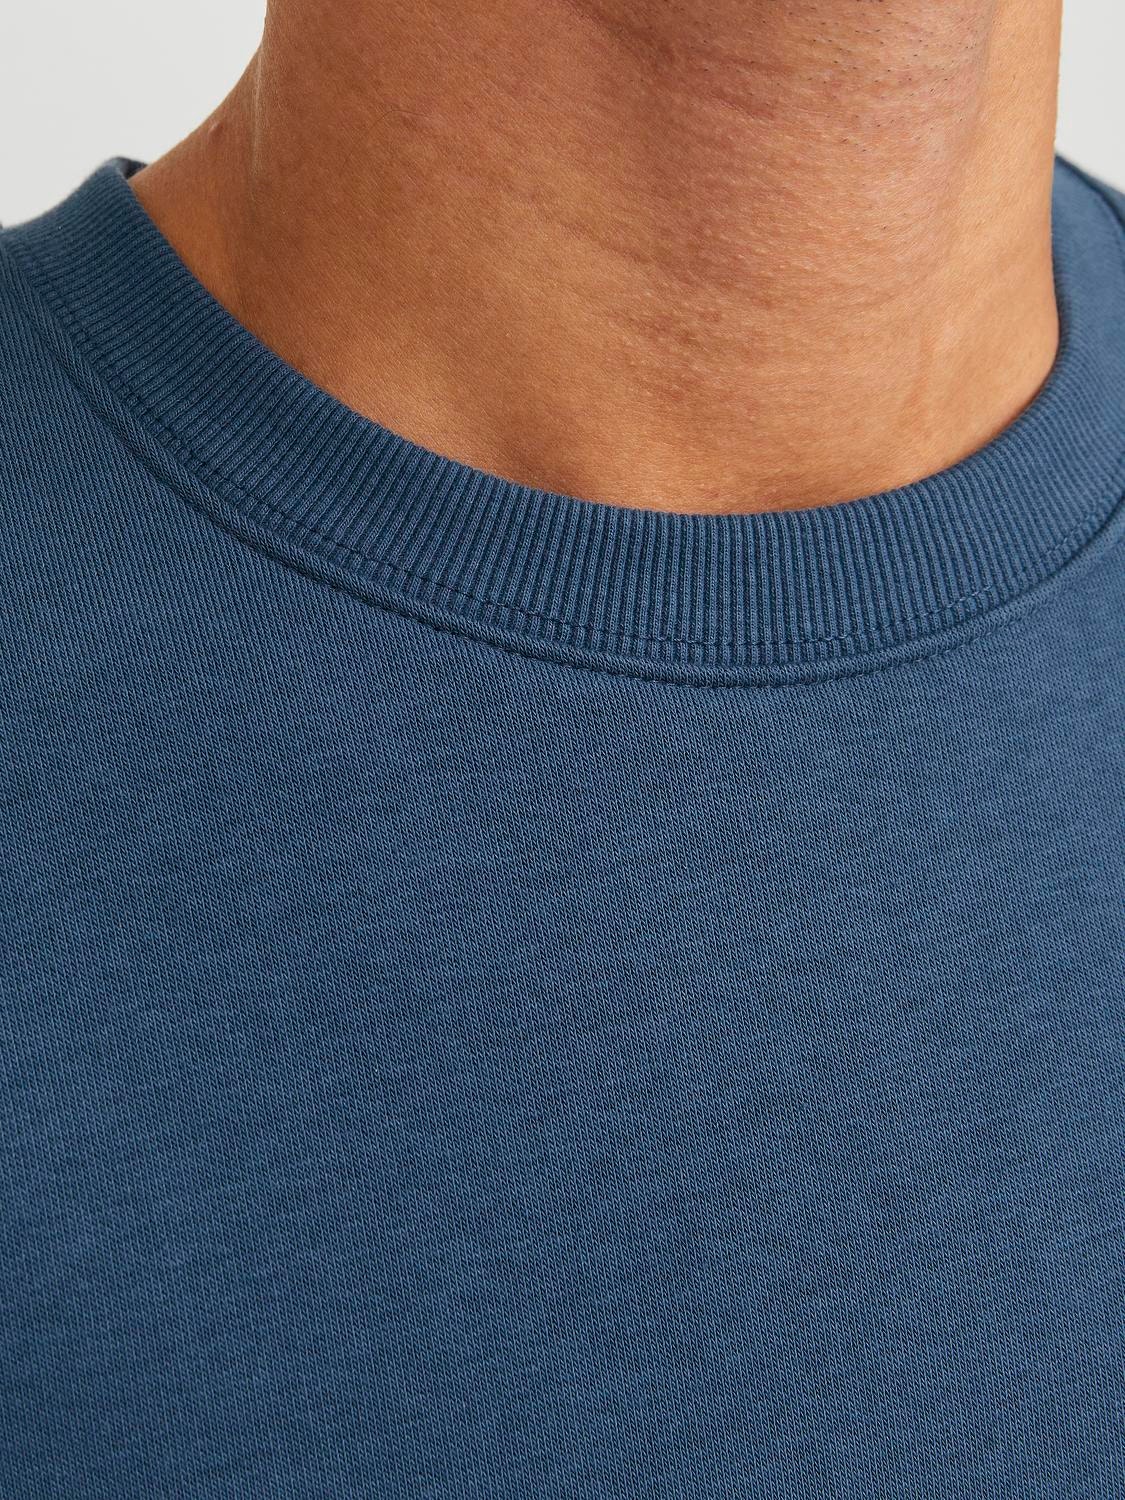 Jack & Jones Plain Crew neck Sweatshirt -Ensign Blue - 12208182